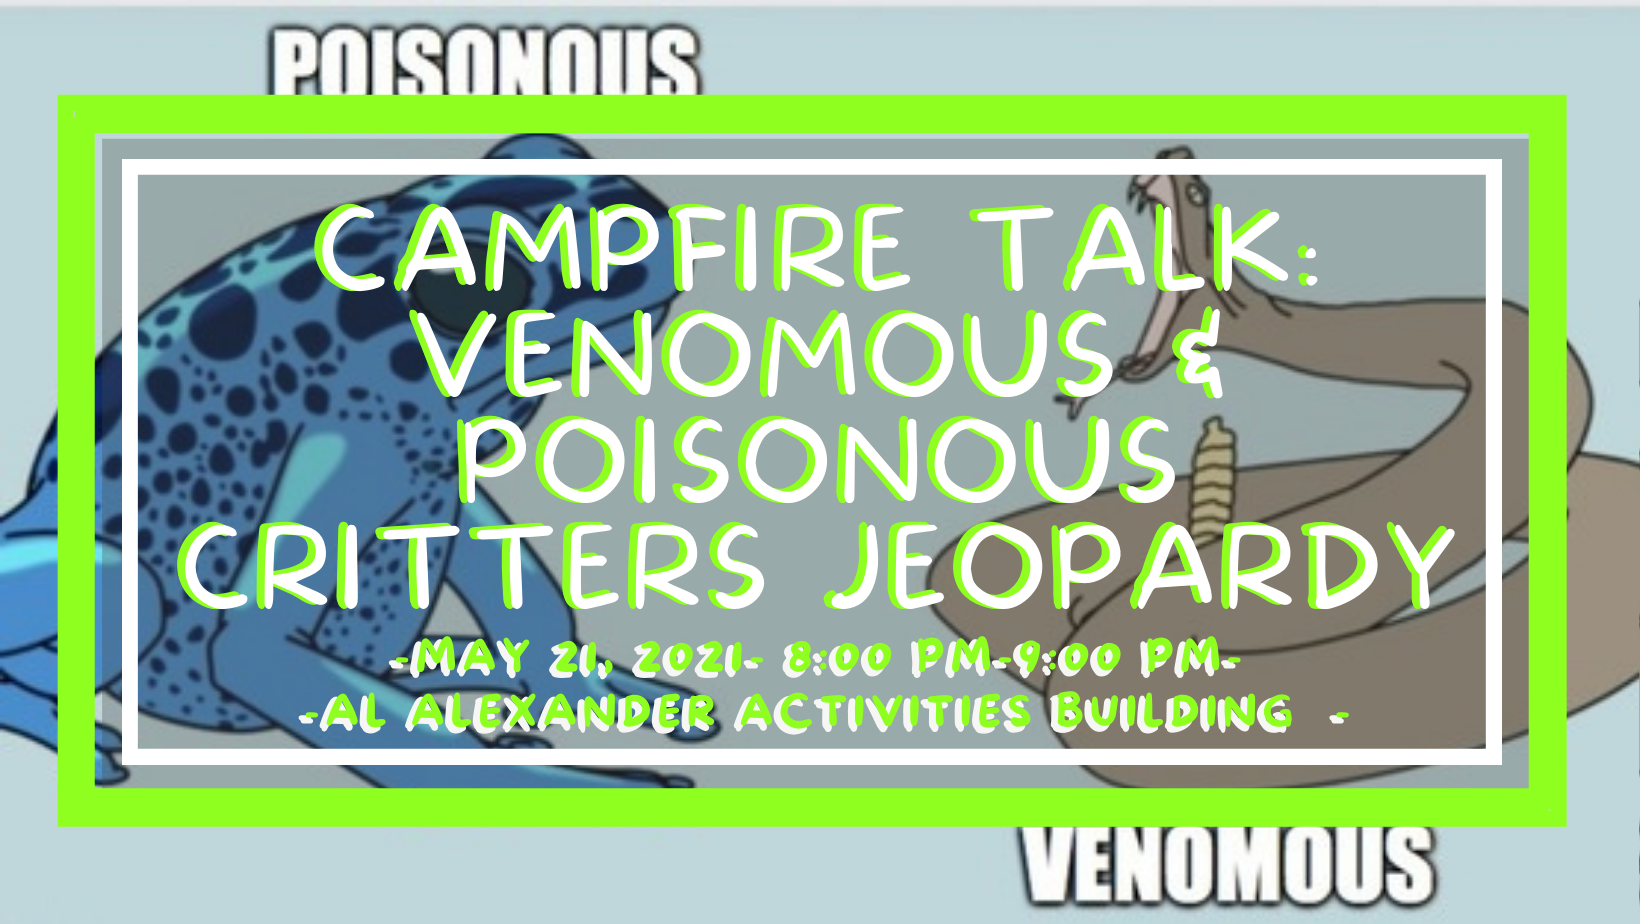 Campfire Talk: Venomous & Poisonous Critters Jeopardy